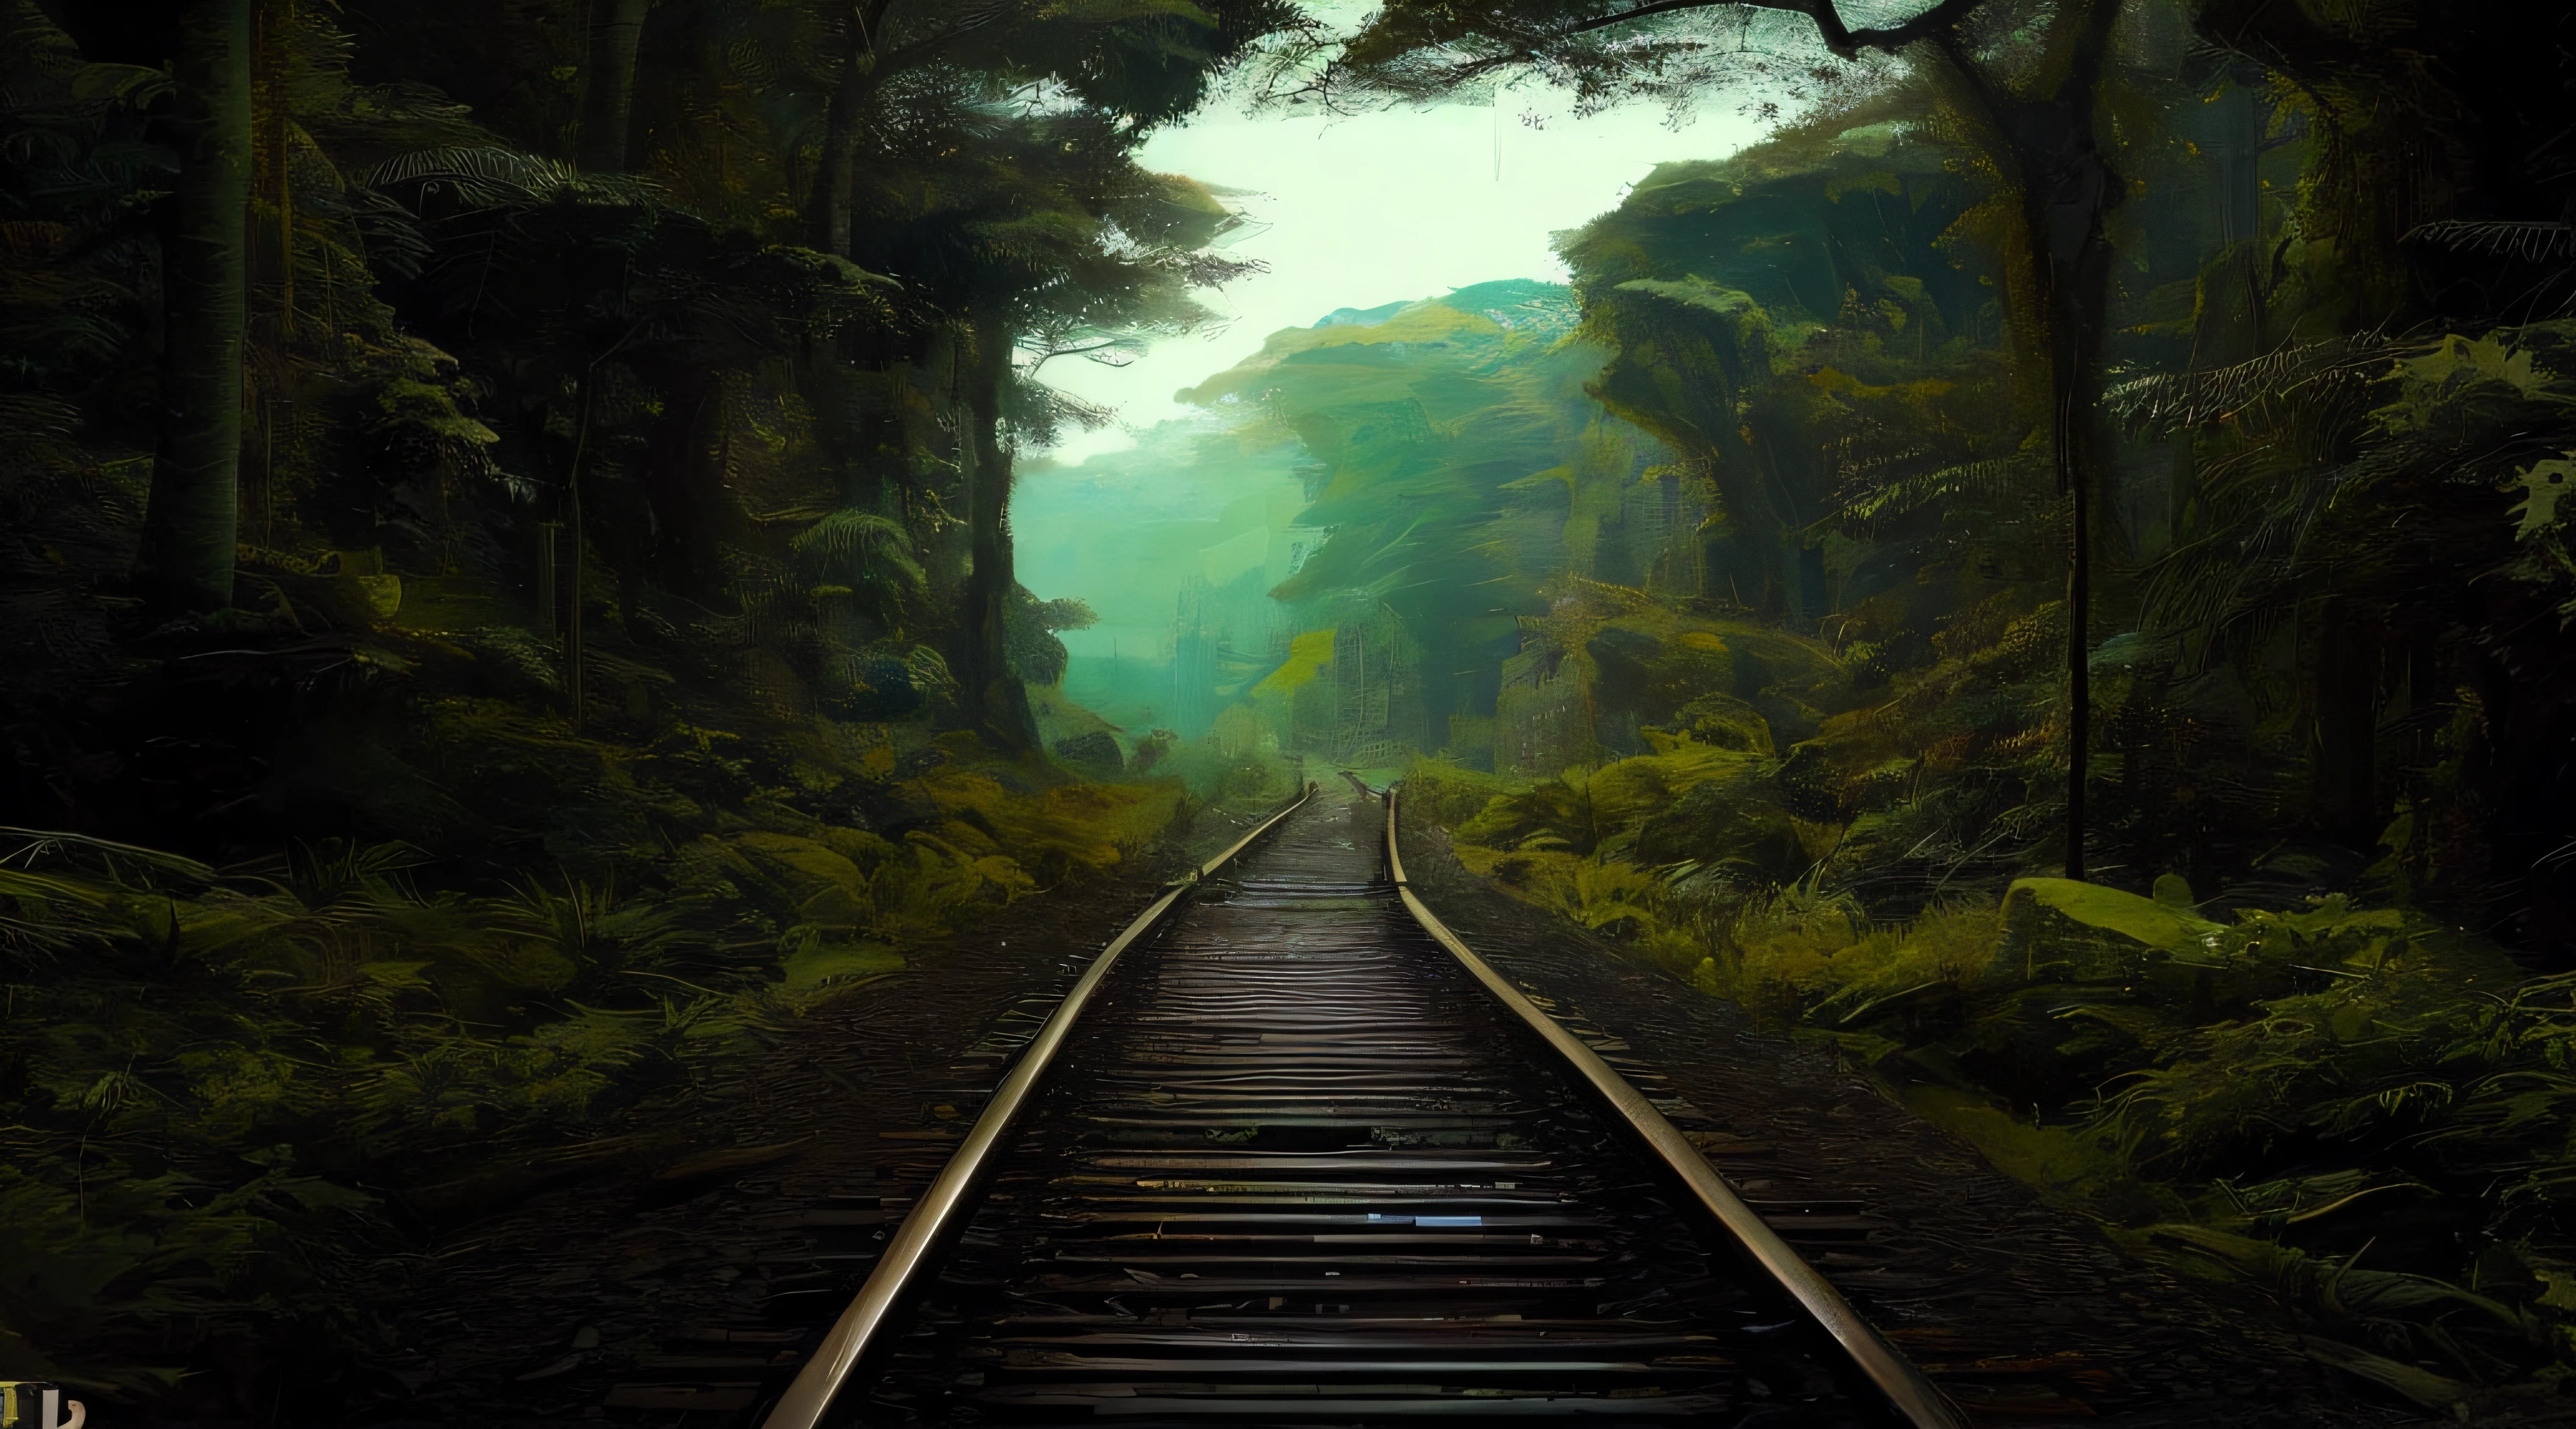 هناك مسار القطار الذي يمر عبر الغابة, على مسار قطار غابة الغابة, السكك الحديدية المهجورة, غابة غريبة, غابة عميقة من عالم آخر, طريق السكك الحديدية, طريق السكك الحديديةs abandonadas, القضبان, يدرب, السكك الحديدية الميكانيكية الحيوية, غابة غريبة, 5 0 0 بكسل, 500 بكسل, مبهر, صورة جميلة, صور من ناشيونال جيوغرافيك", يدرب LONGE